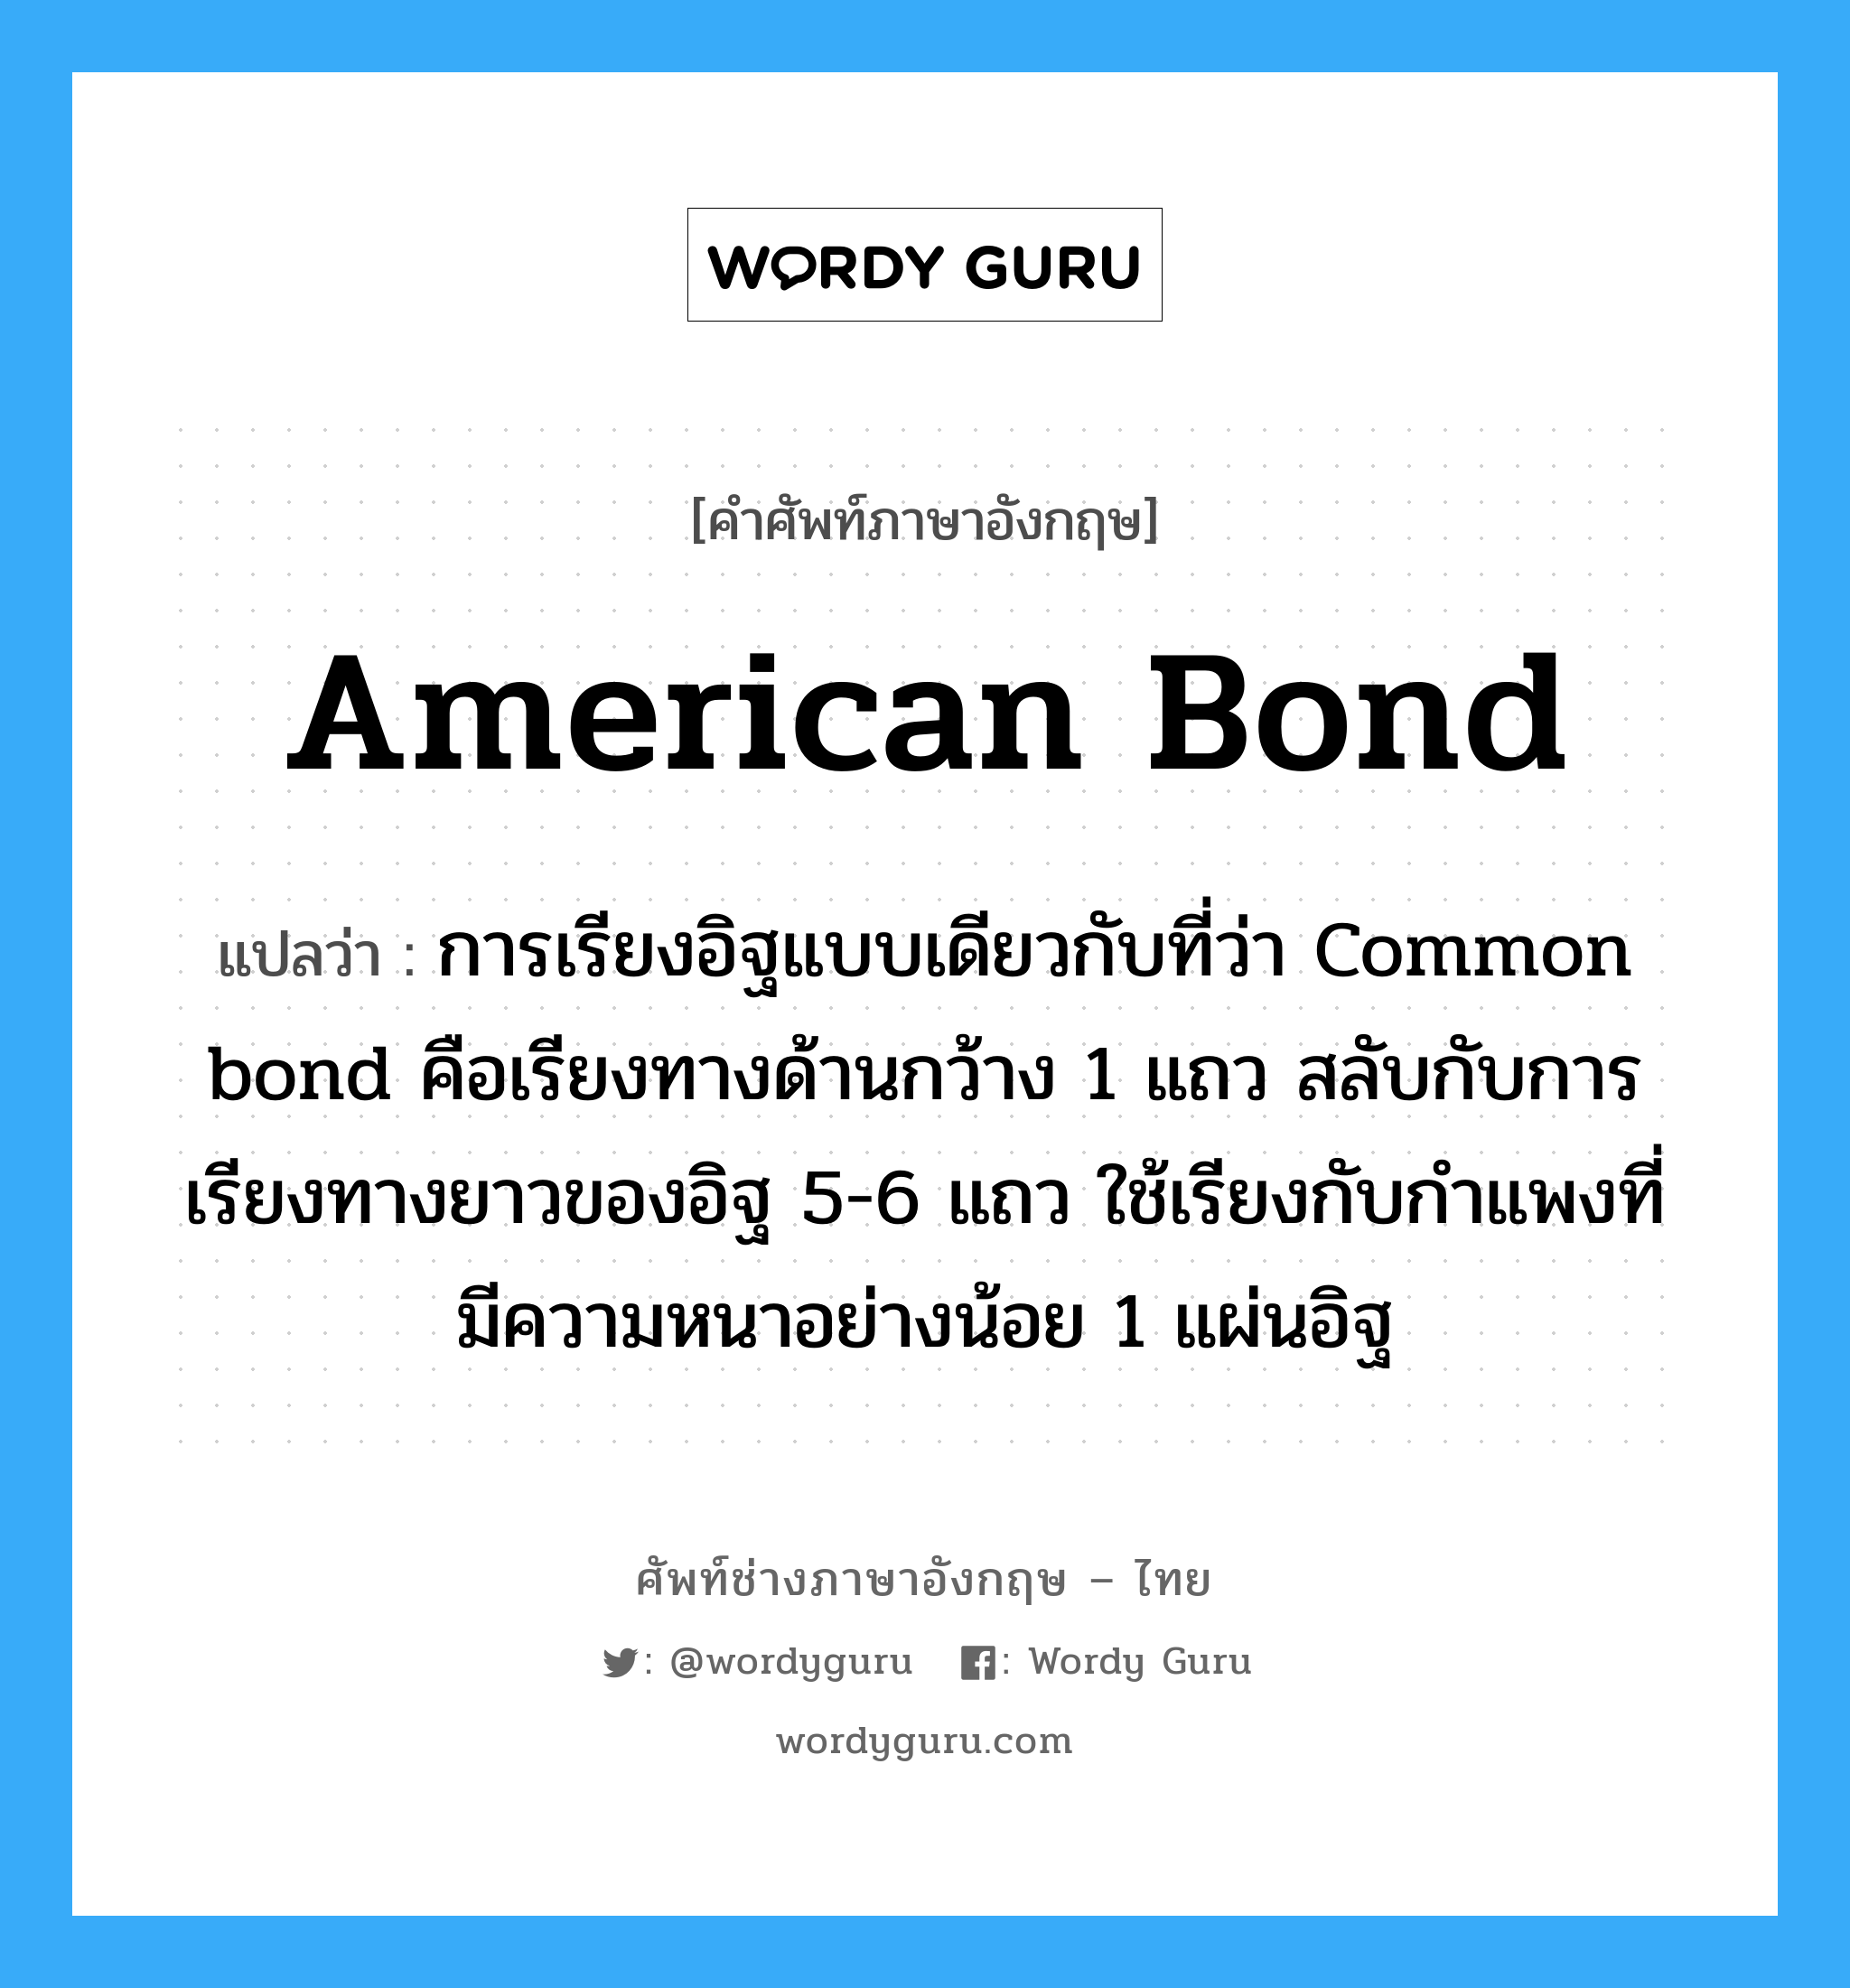 American bond แปลว่า?, คำศัพท์ช่างภาษาอังกฤษ - ไทย American bond คำศัพท์ภาษาอังกฤษ American bond แปลว่า การเรียงอิฐแบบเดียวกับที่ว่า Common bond คือเรียงทางด้านกว้าง 1 แถว สลับกับการเรียงทางยาวของอิฐ 5-6 แถว ใช้เรียงกับกำแพงที่มีความหนาอย่างน้อย 1 แผ่นอิฐ